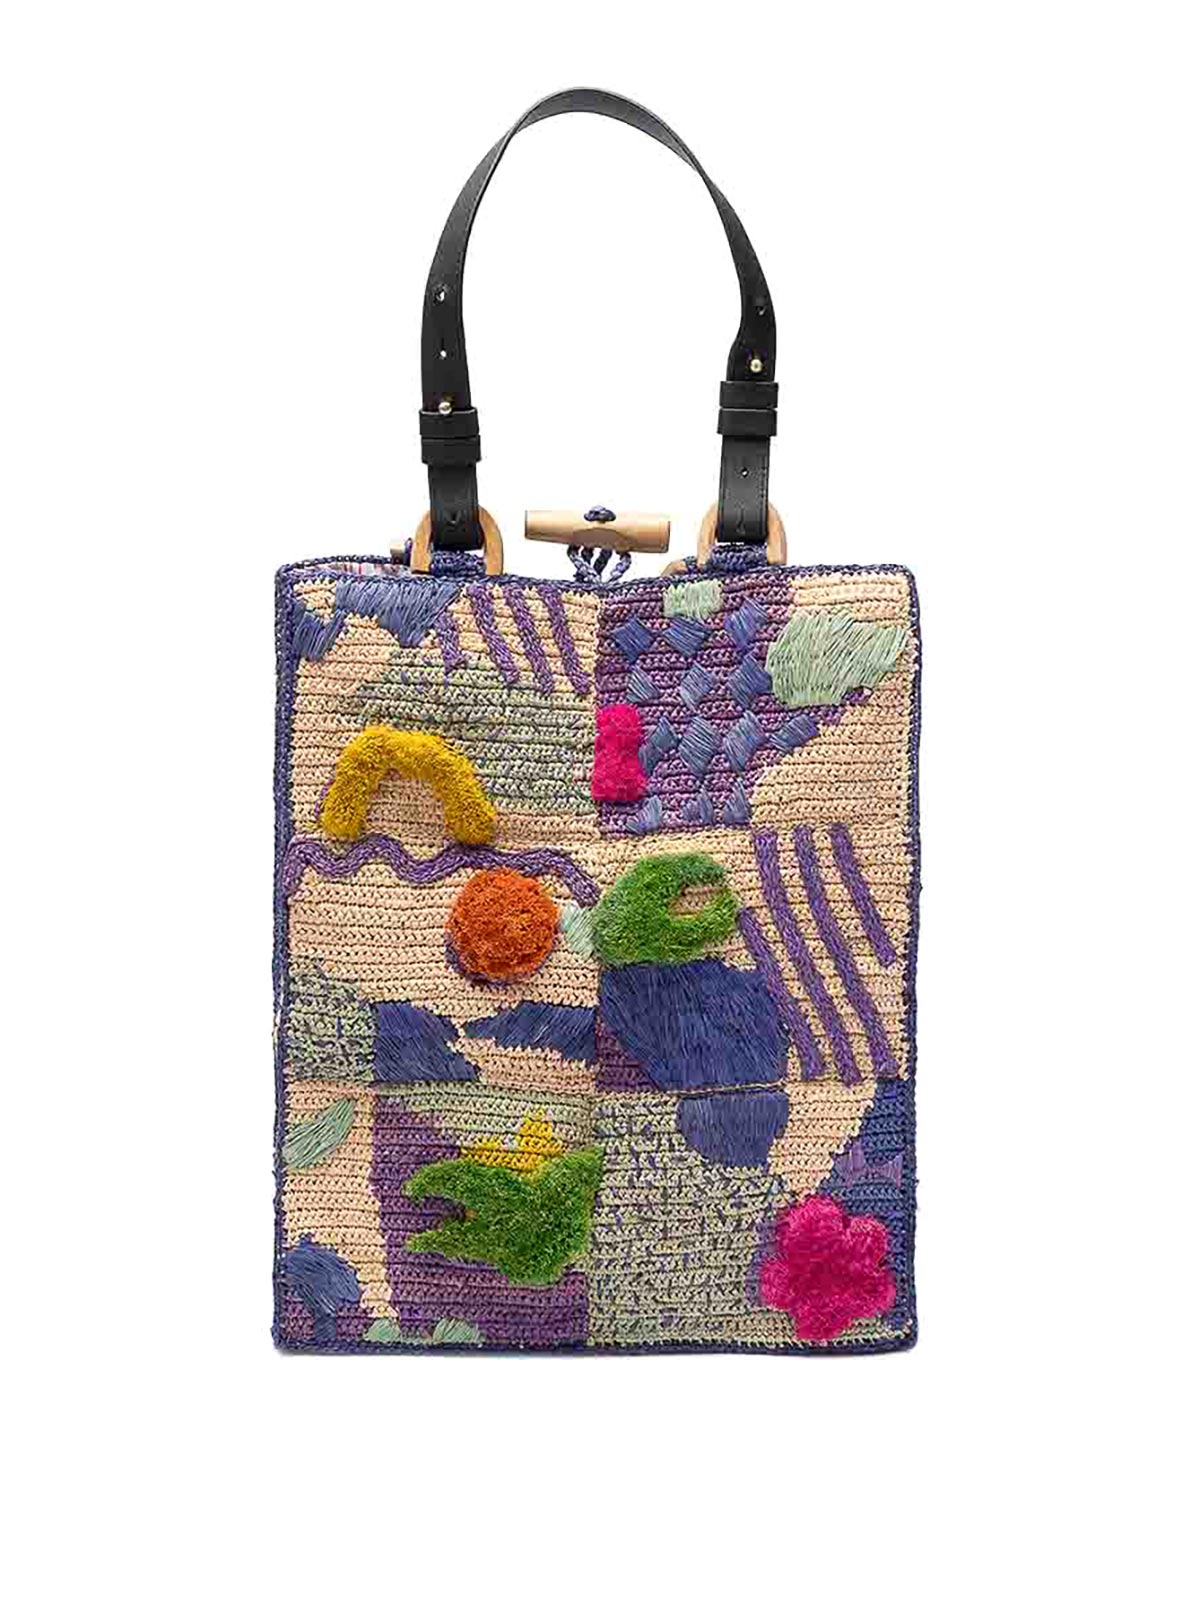 Jamin Puech Miaphis Bag In Multicolour